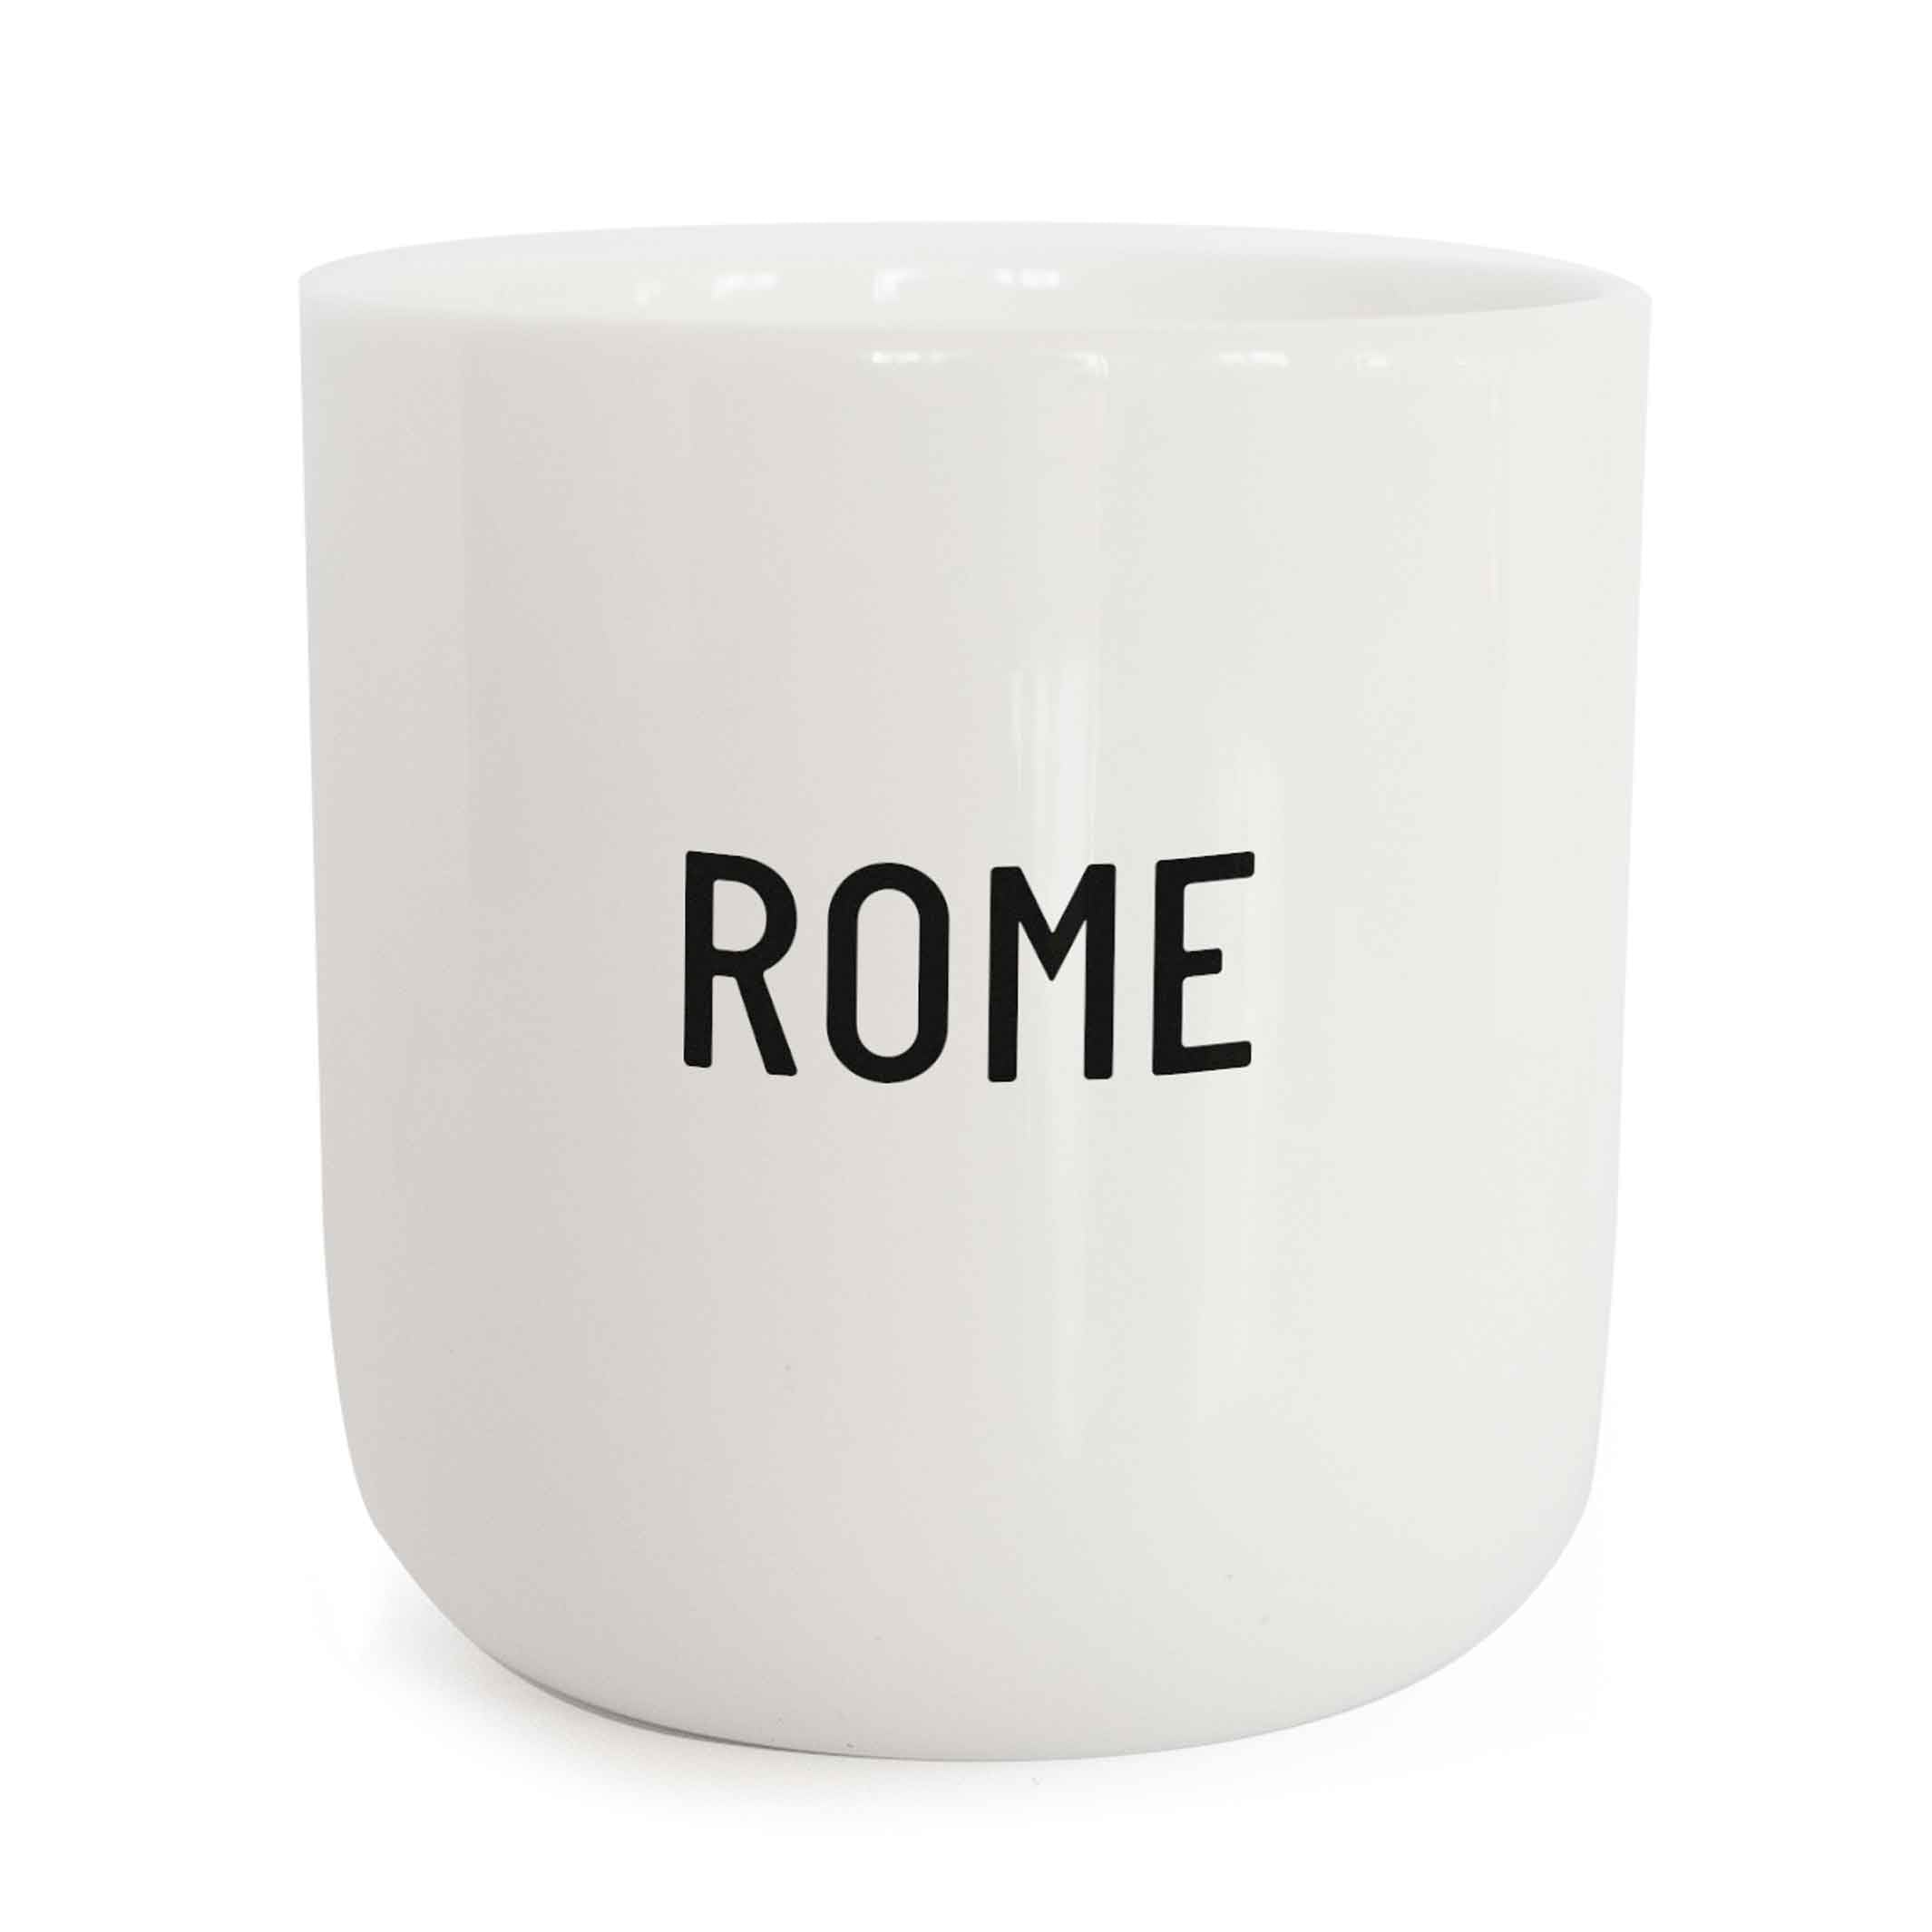 ROME | weisser Kaffee- & Tee-BECHER mit schwarzer Typo | City Collection | PLTY